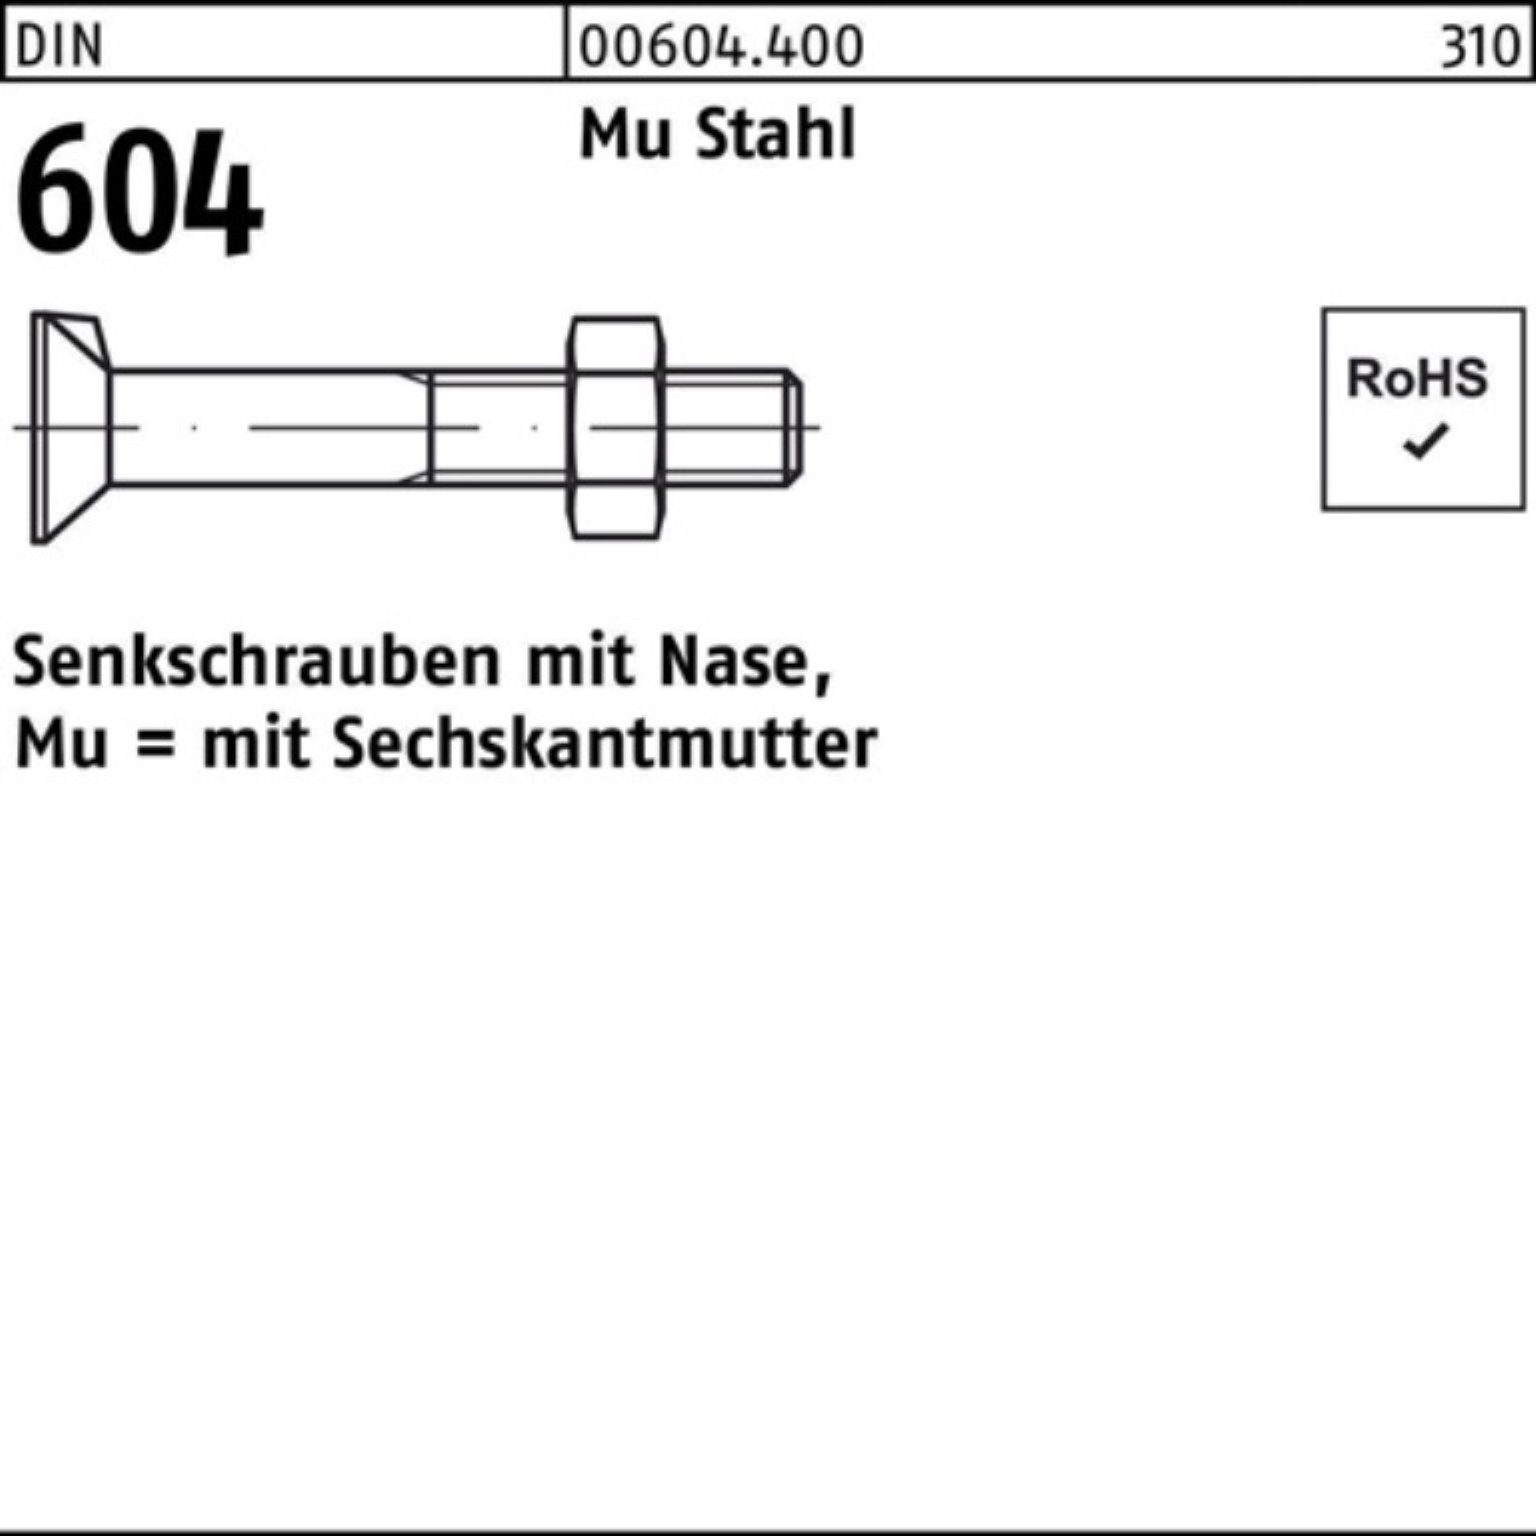 Reyher Senkschraube 500er Pack Senkschraube DIN 604 Nase/6-ktmutter M6x 25 Mu Stahl 4.6 50